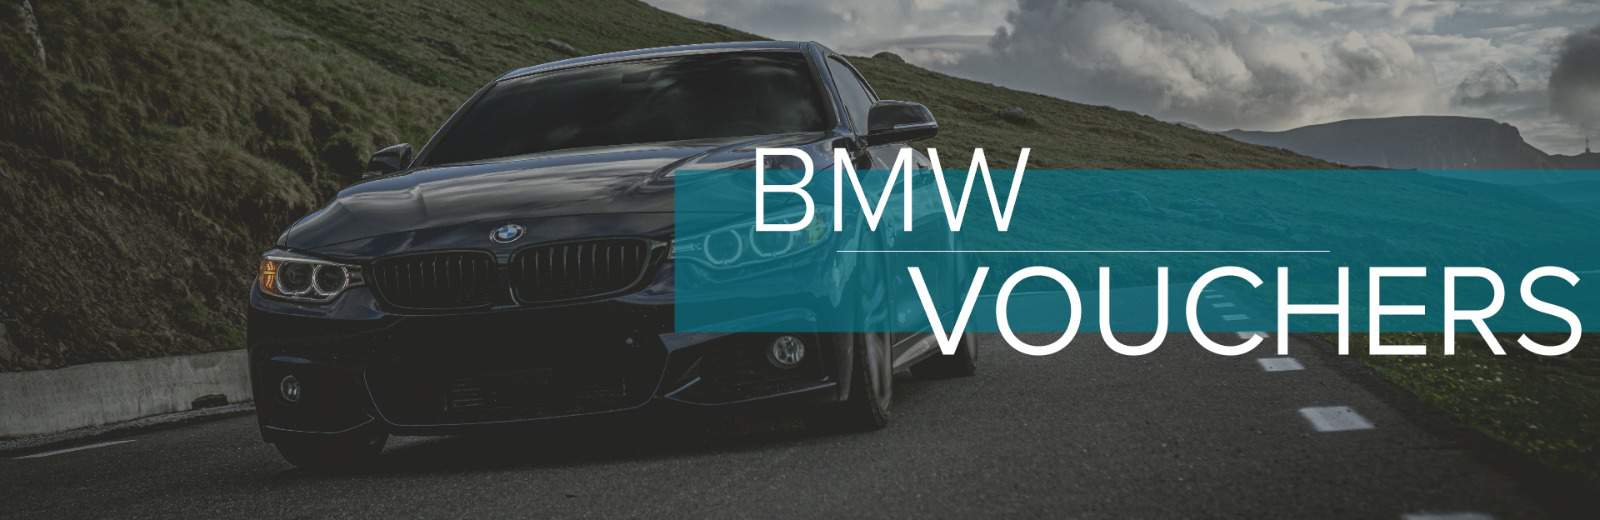 BMW Vouchers